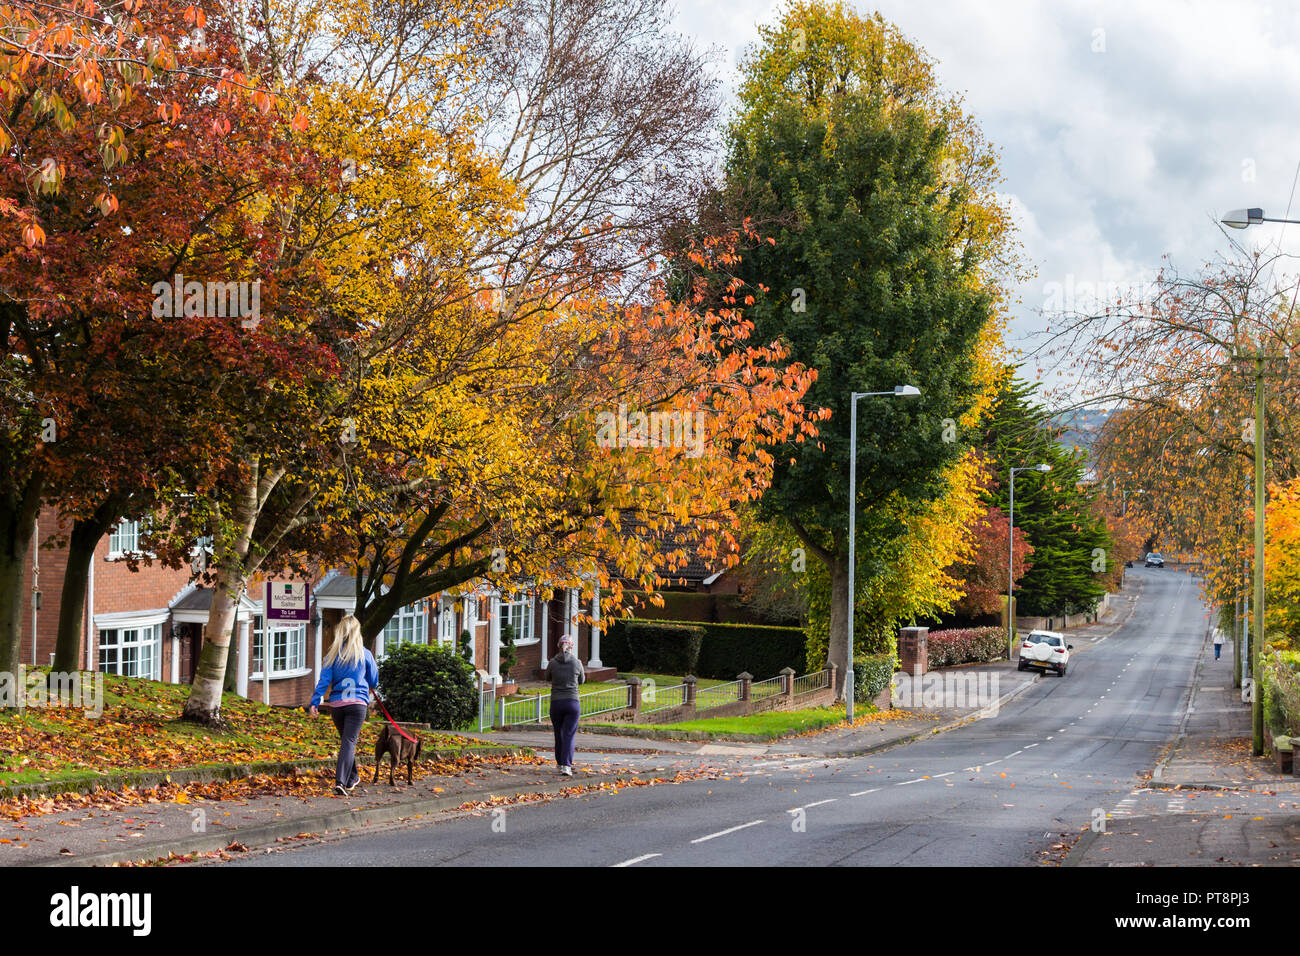 Farben des Herbstes auf einer von Bäumen gesäumten Straße mit Mädchen zu Fuß Hund. Pond Park Road, Lisburn, Nordirland. Stockfoto